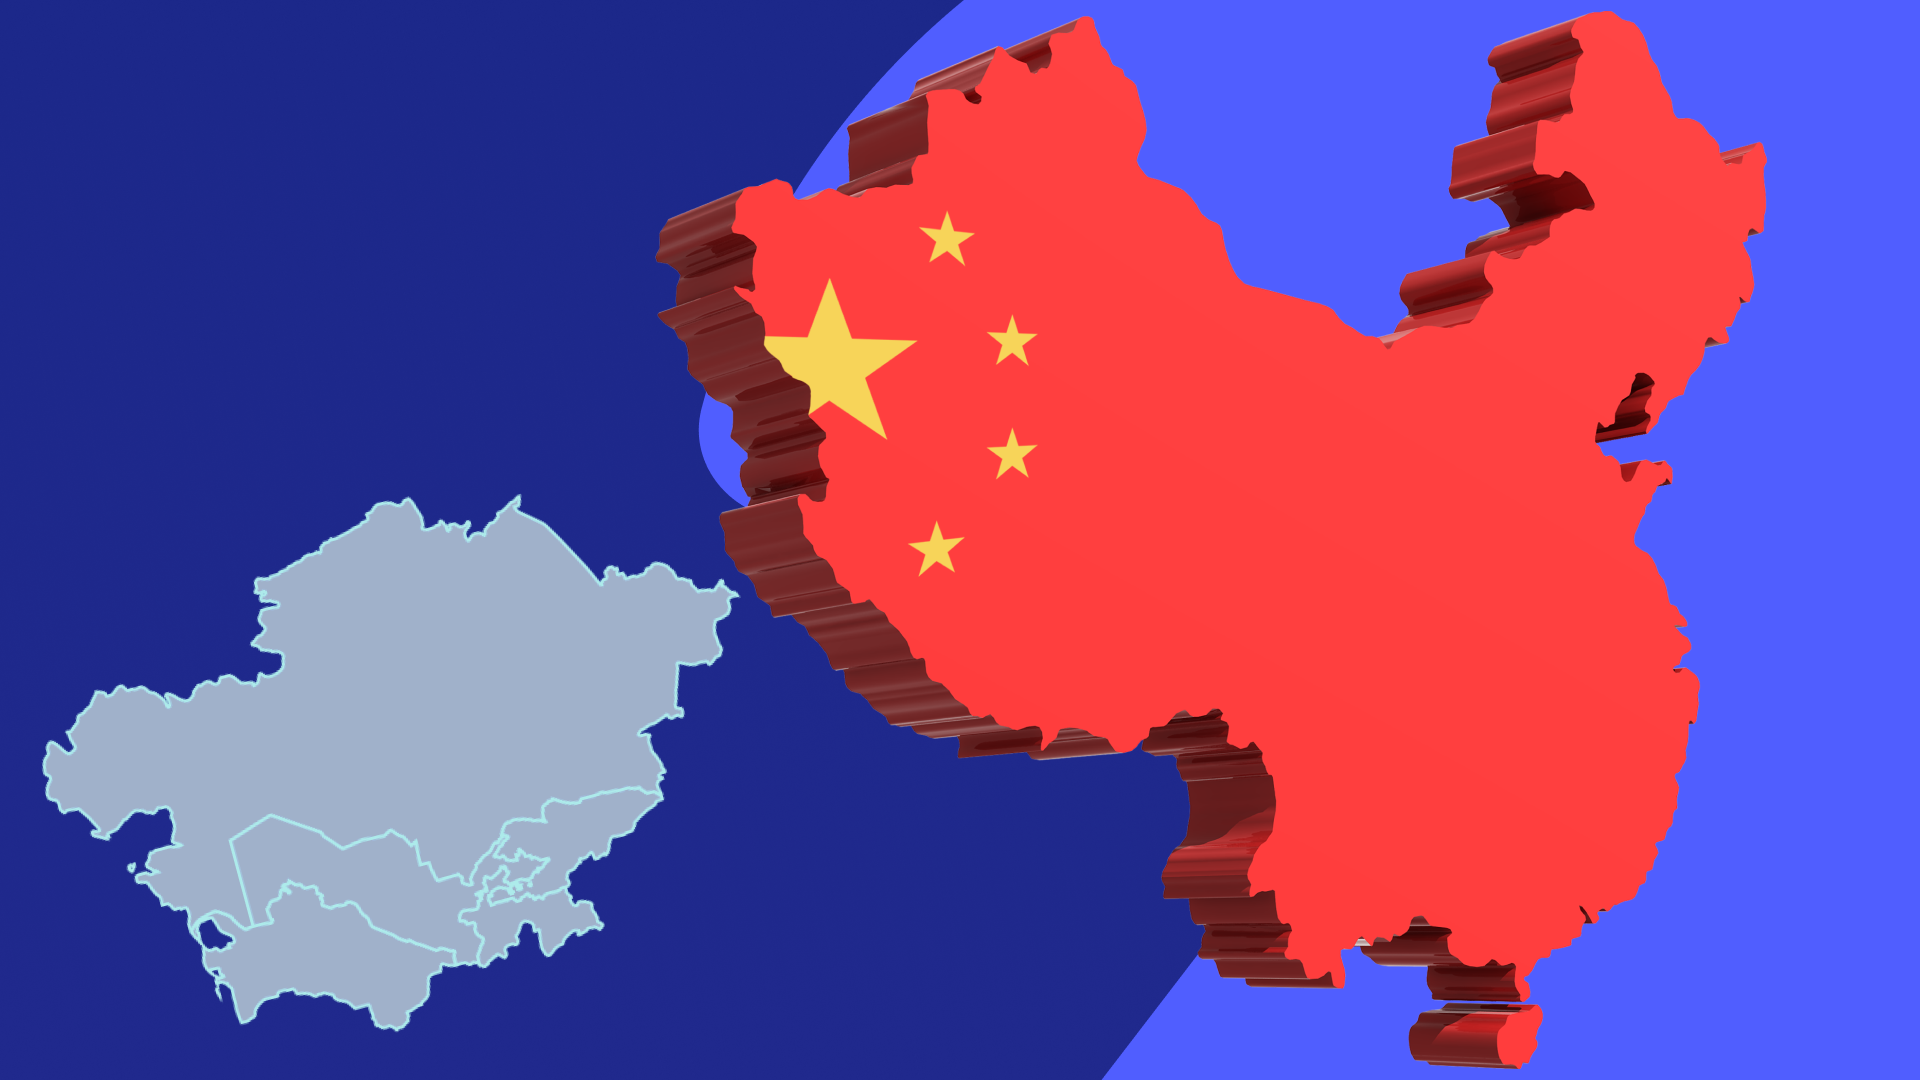 Қытай және Орталық Азия: ынтымақтастық па әлде бақылау ма?